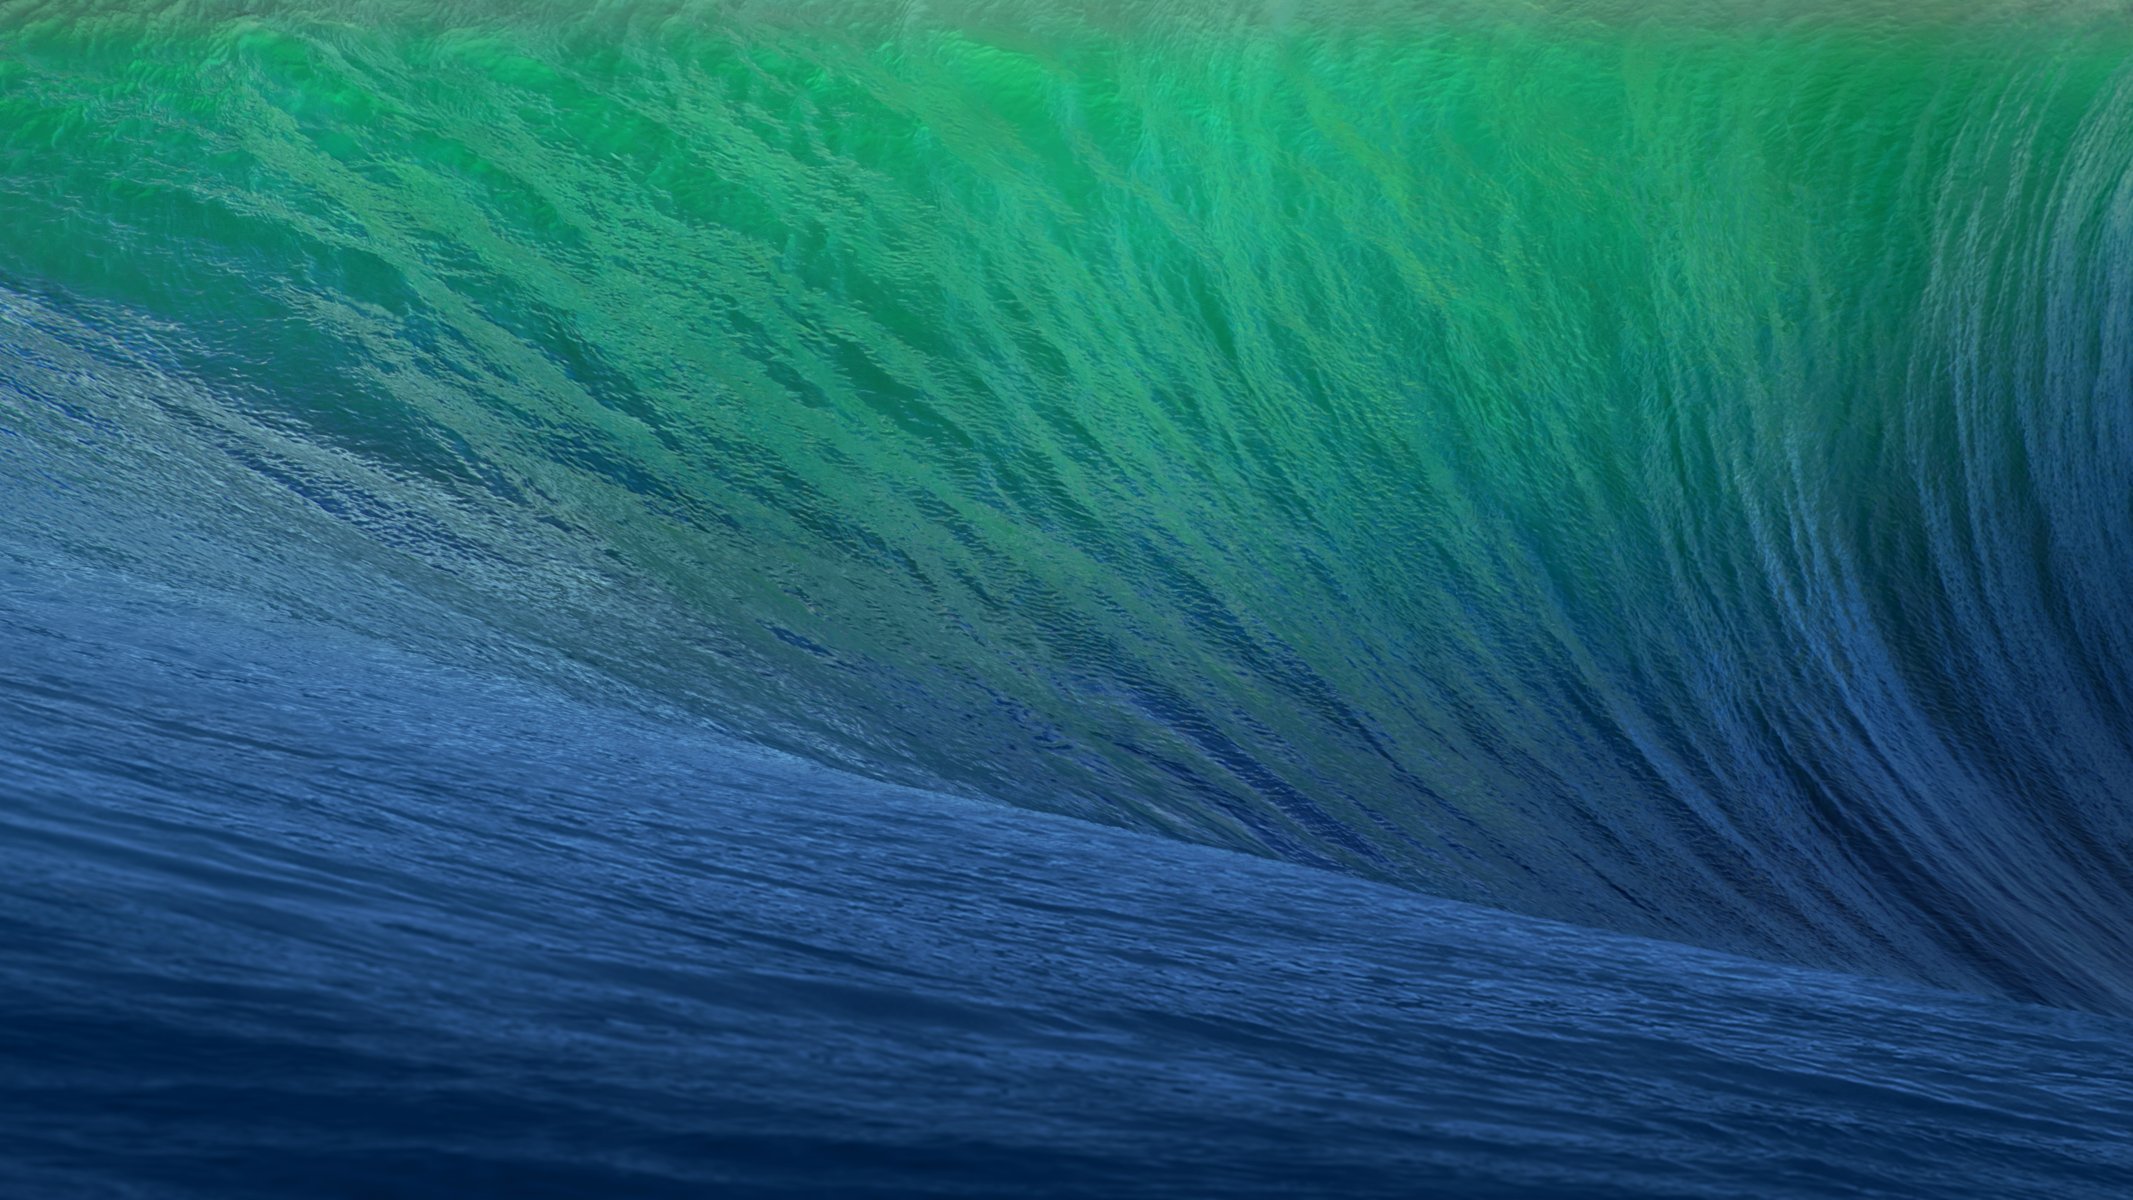 5120x2880 mac ос os x маверикс яблоко os x 10.9 маверикс калифорния обои волна море синий зеленый wwdc 2013